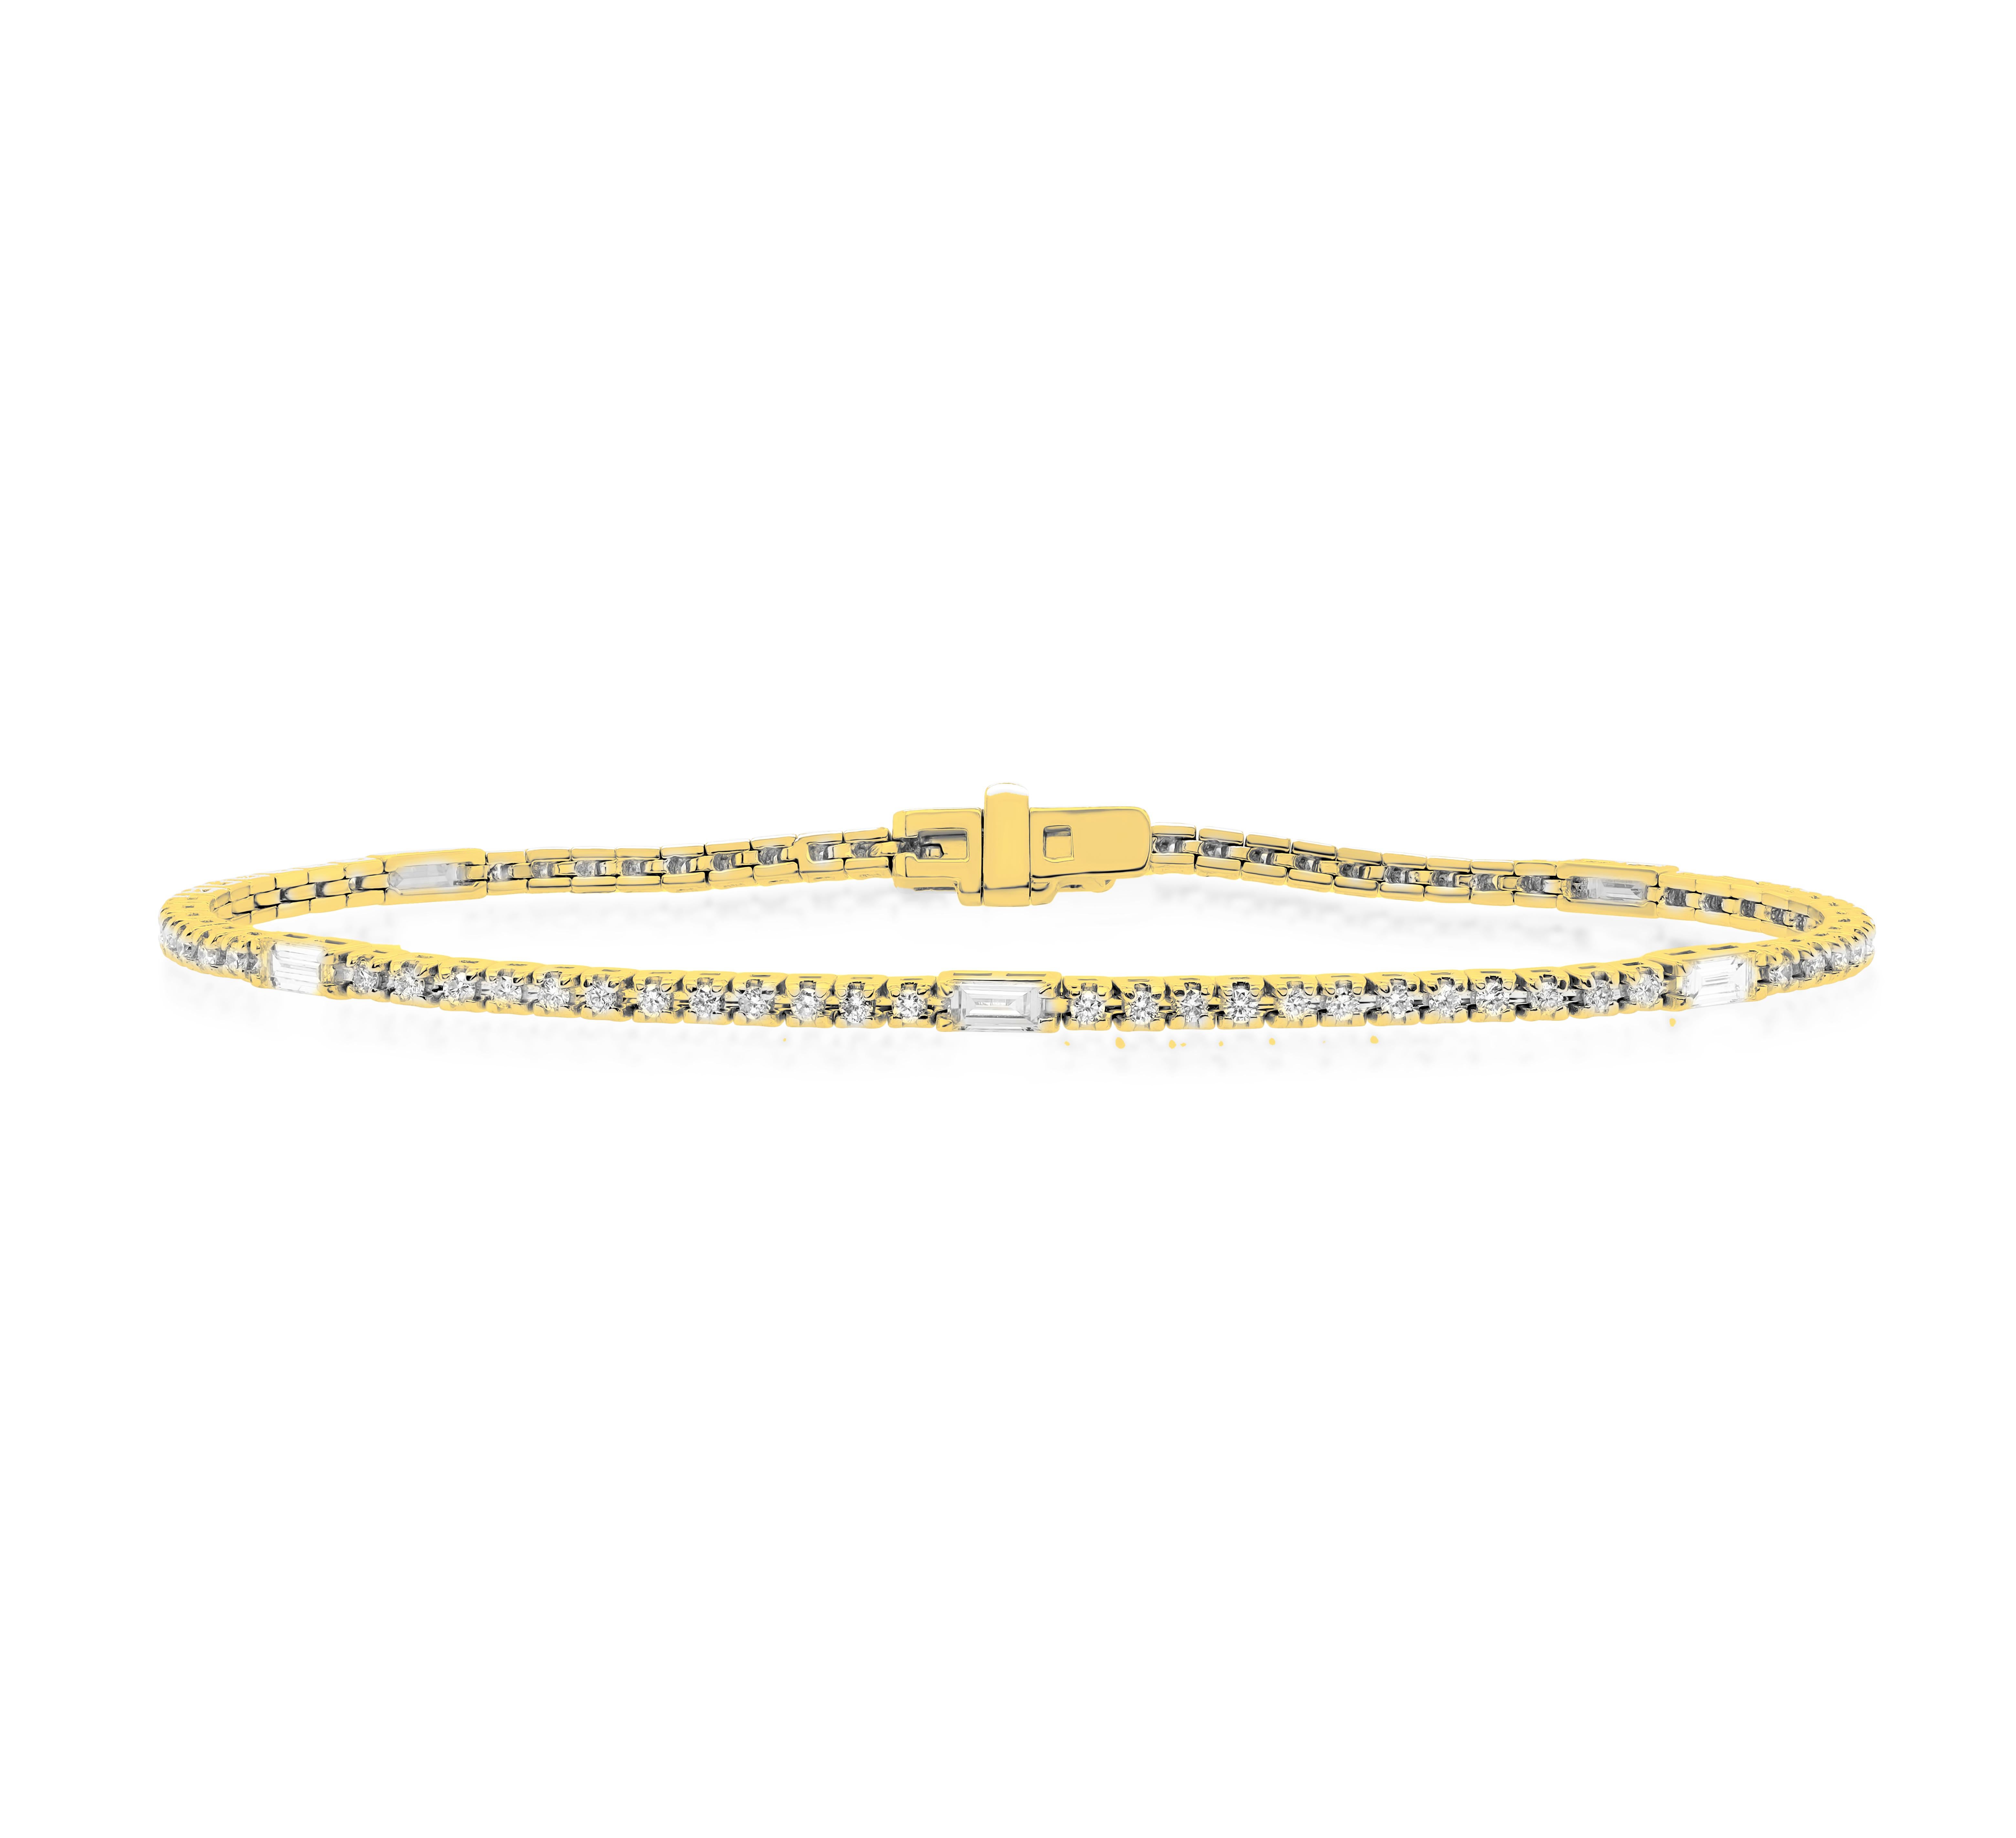 Custom 14kt Gelbgold Armband mit 2 cts von Runden und Baguette-Diamanten Farbe FG SI Klarheit. Ausgezeichneter Schnitt.